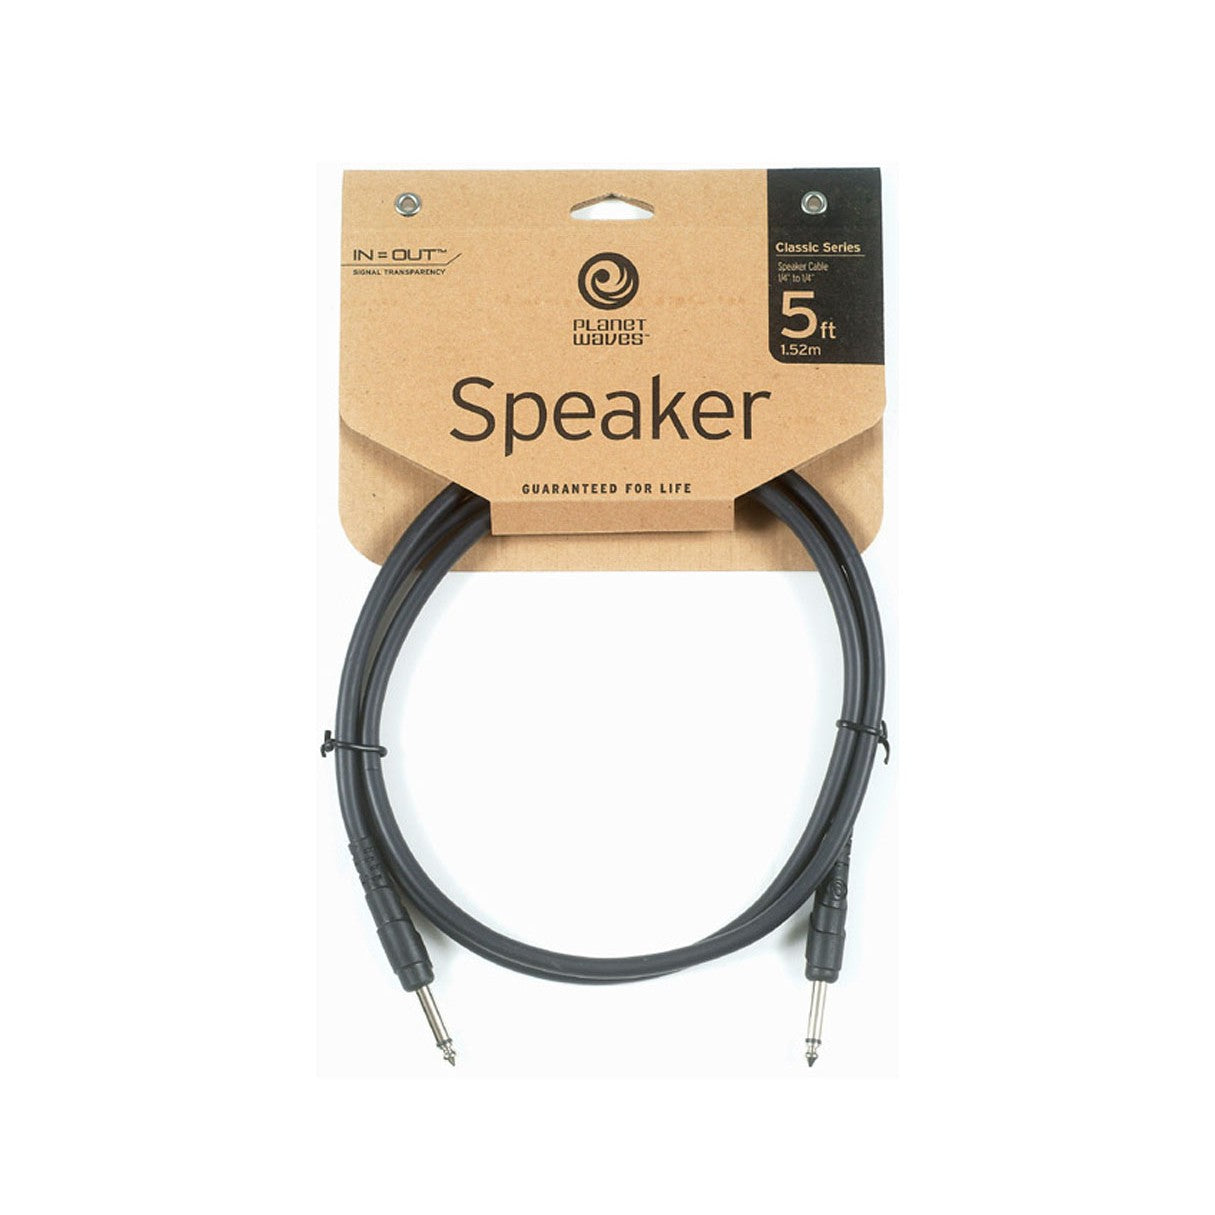 D'Addario Classic Series Speaker Cables - 5'